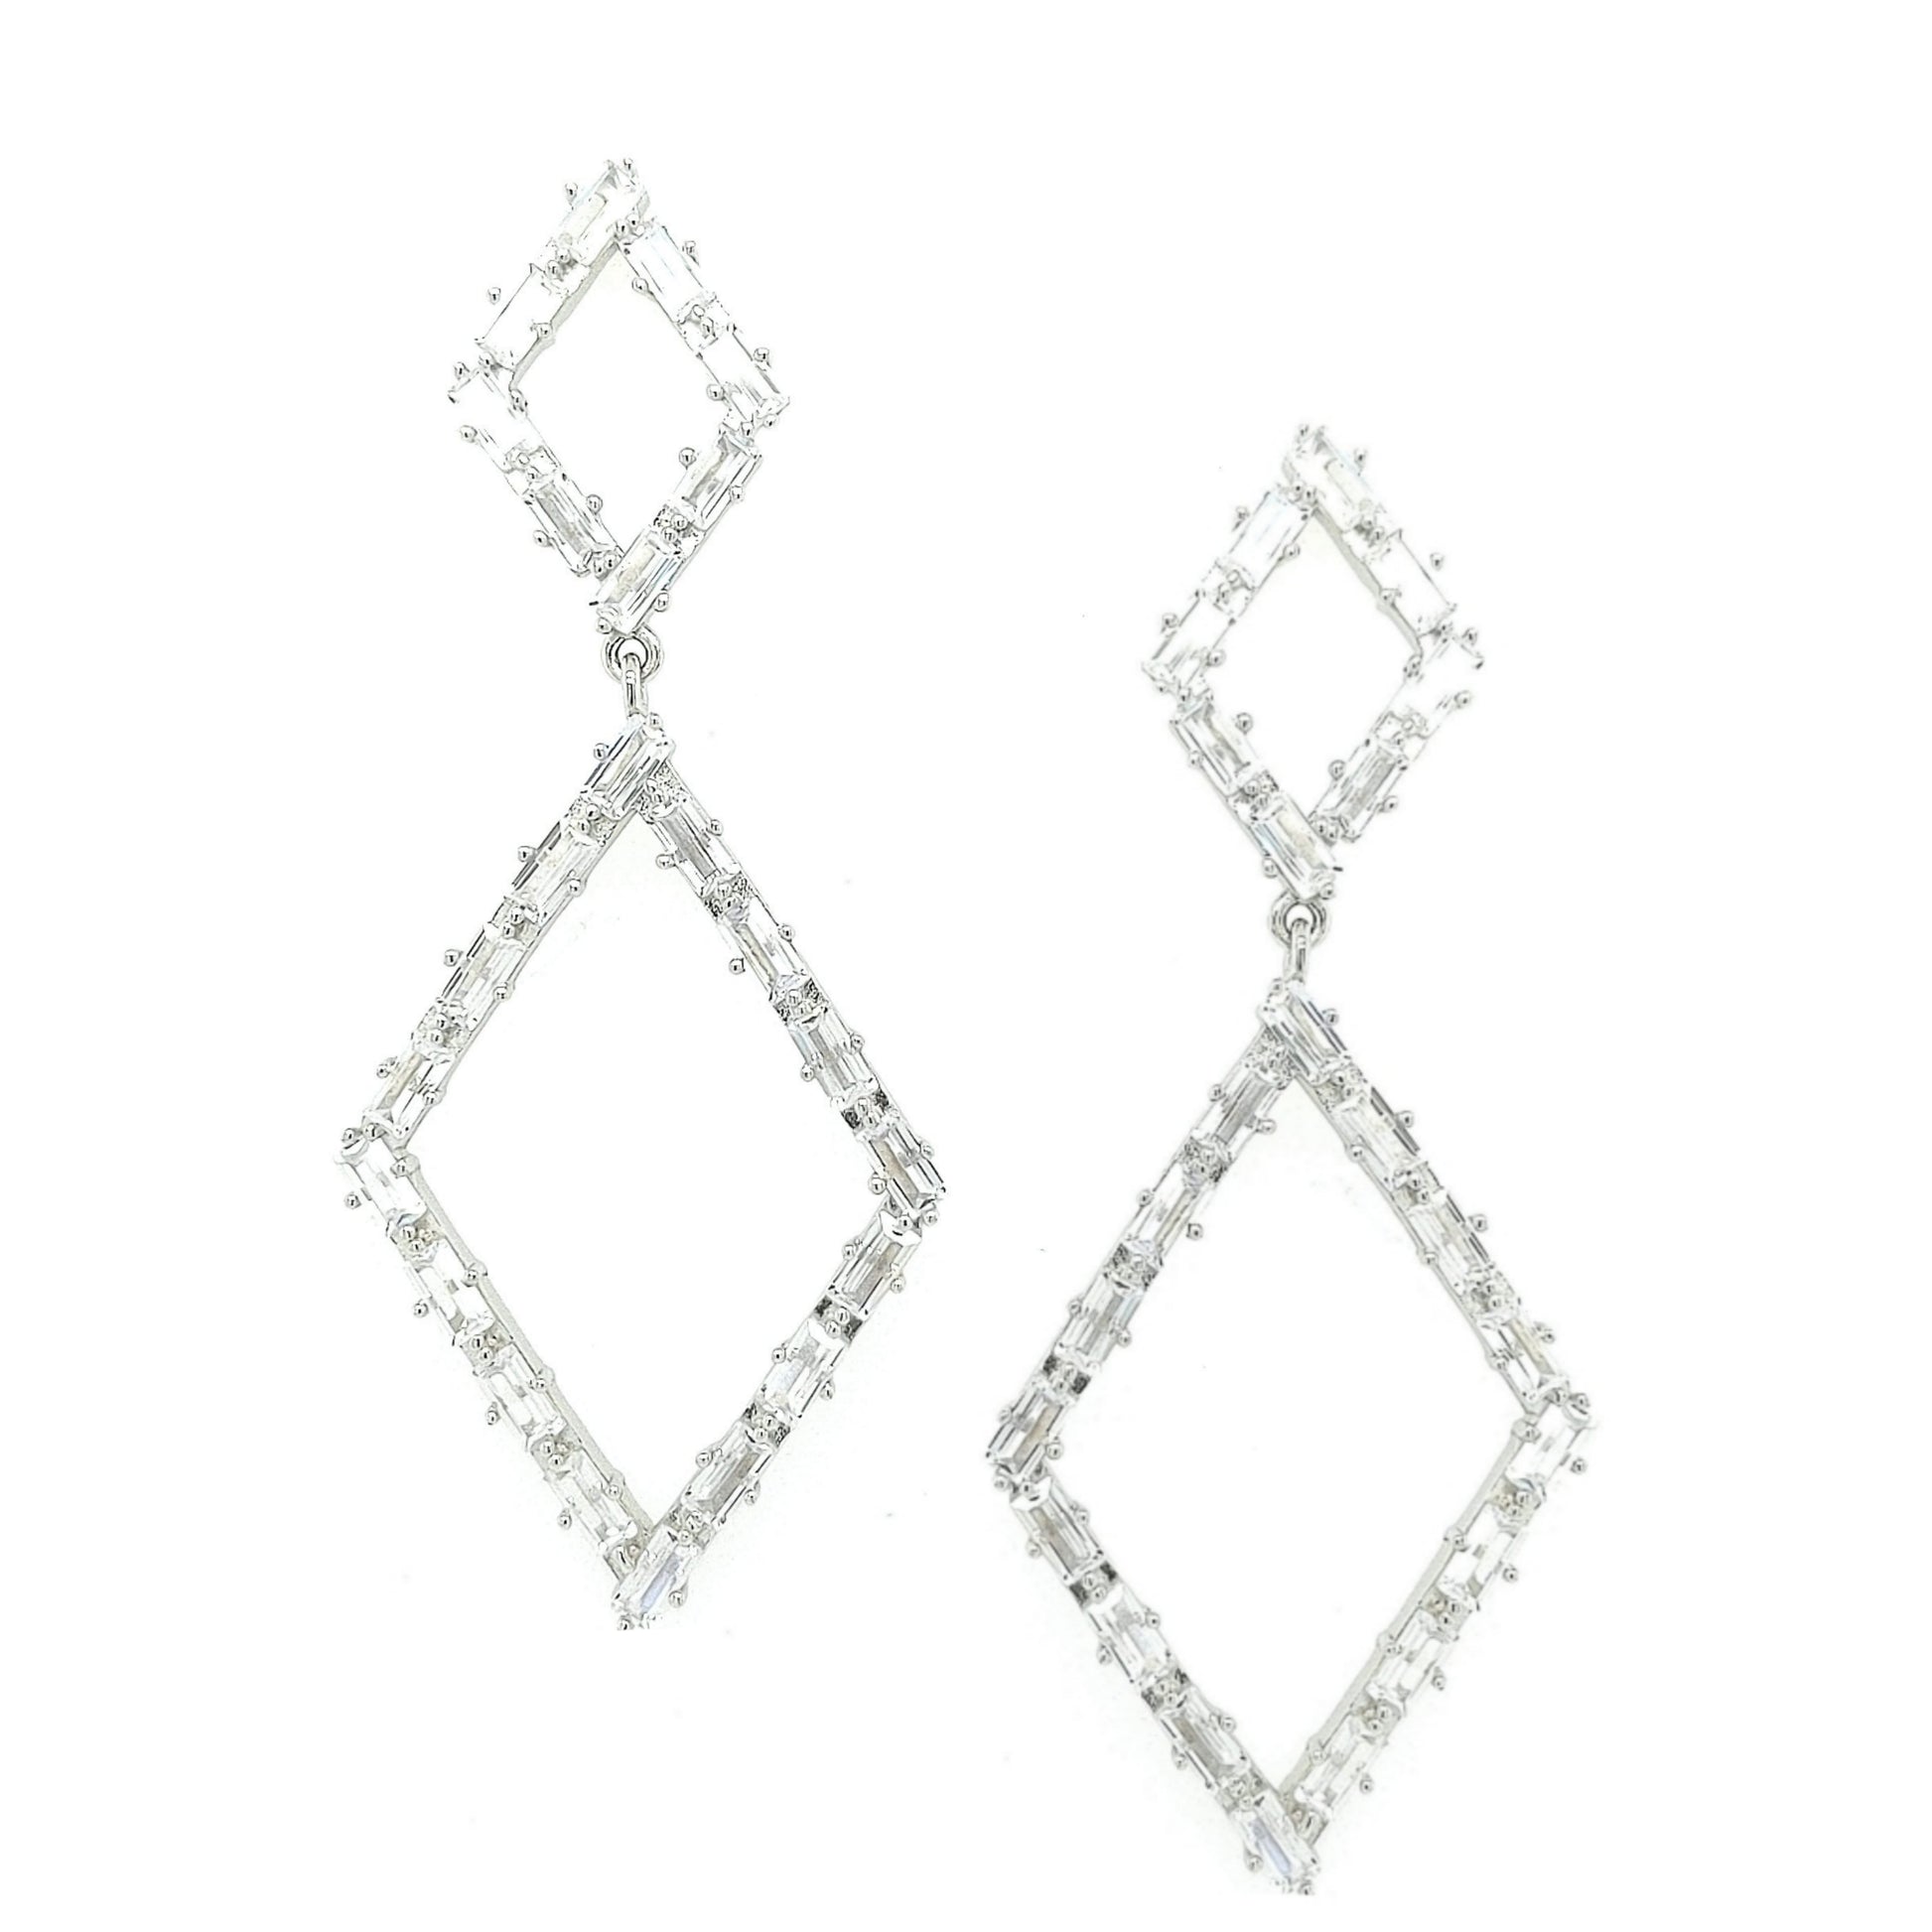 Sterling Silver Double Diamond Shaped Earring - HK Jewels